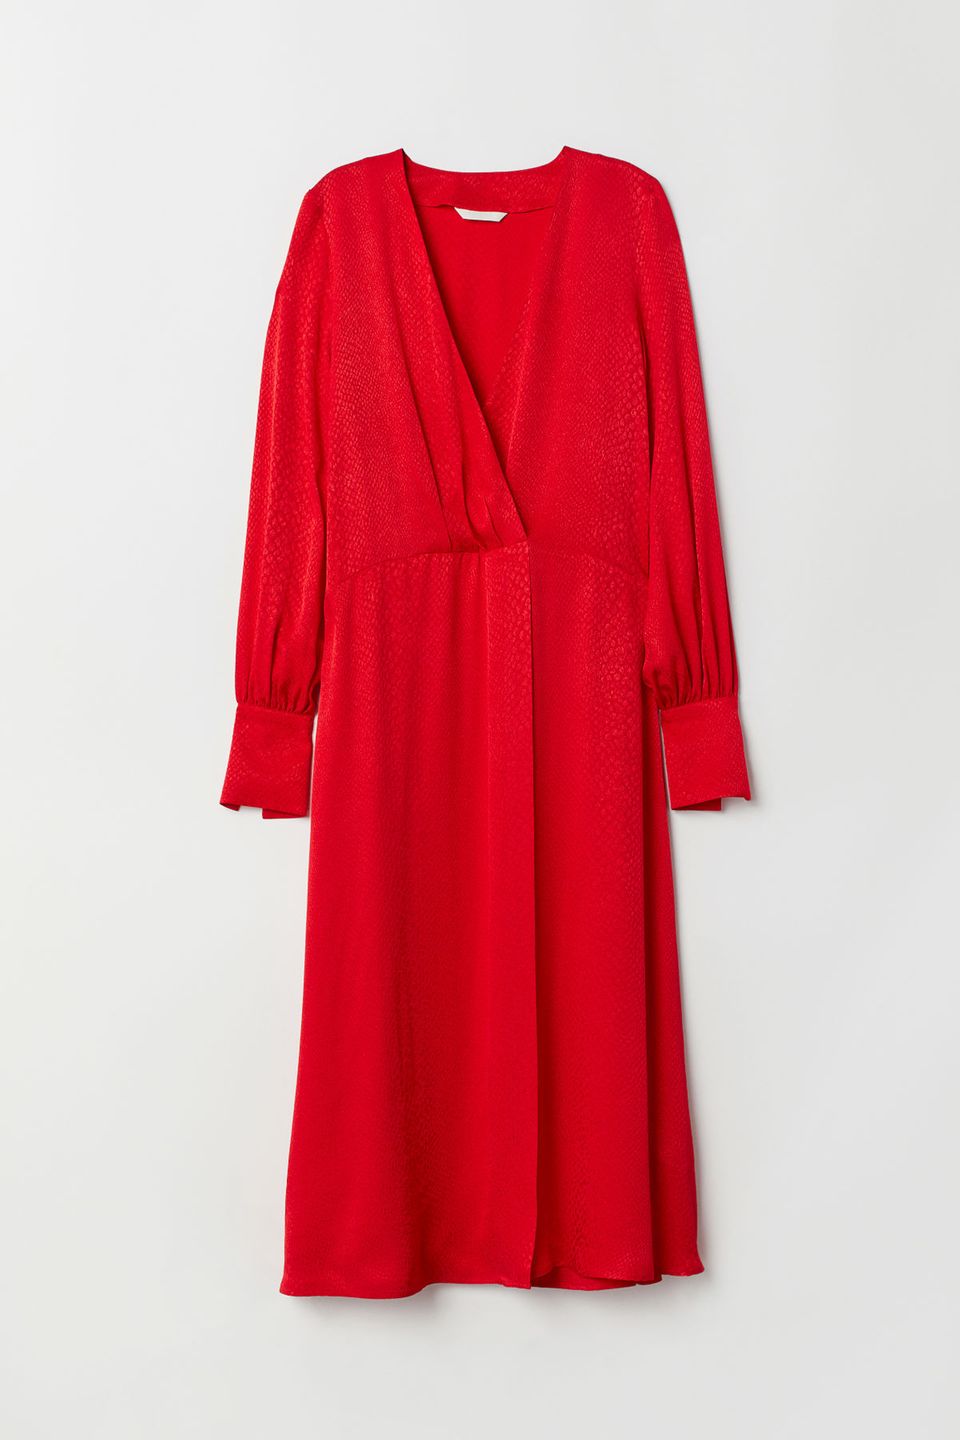 Neu in den Shops im Dezember: Rotes Kleid aus Jacquardstoff von H&M